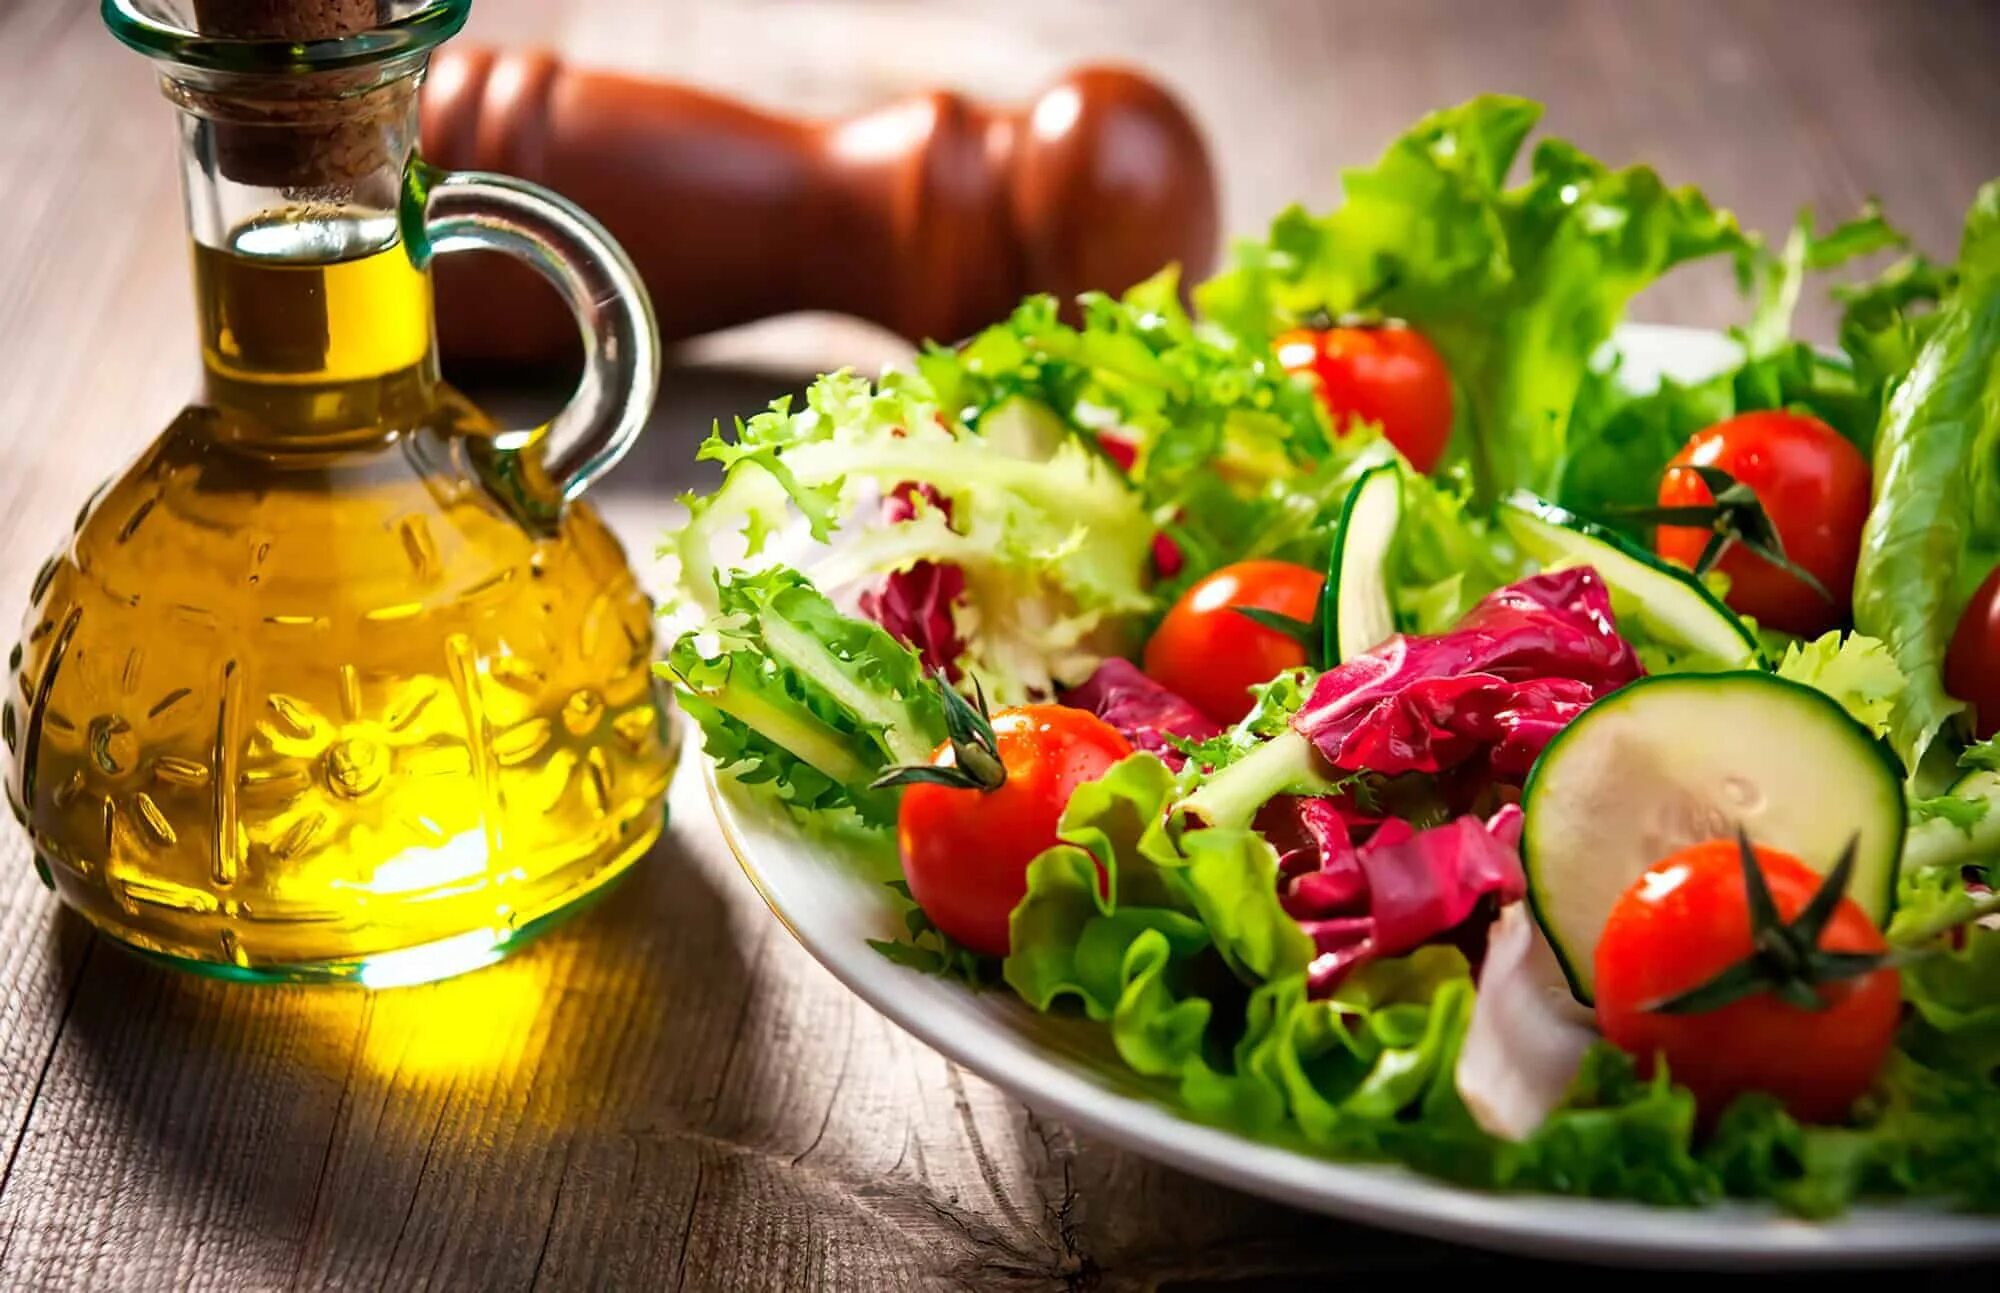 Заправка к овощному салату. Салат с маслом растительным. Салат с оливковым маслом. Салат овощной с маслом. Растительное масло и овощи.